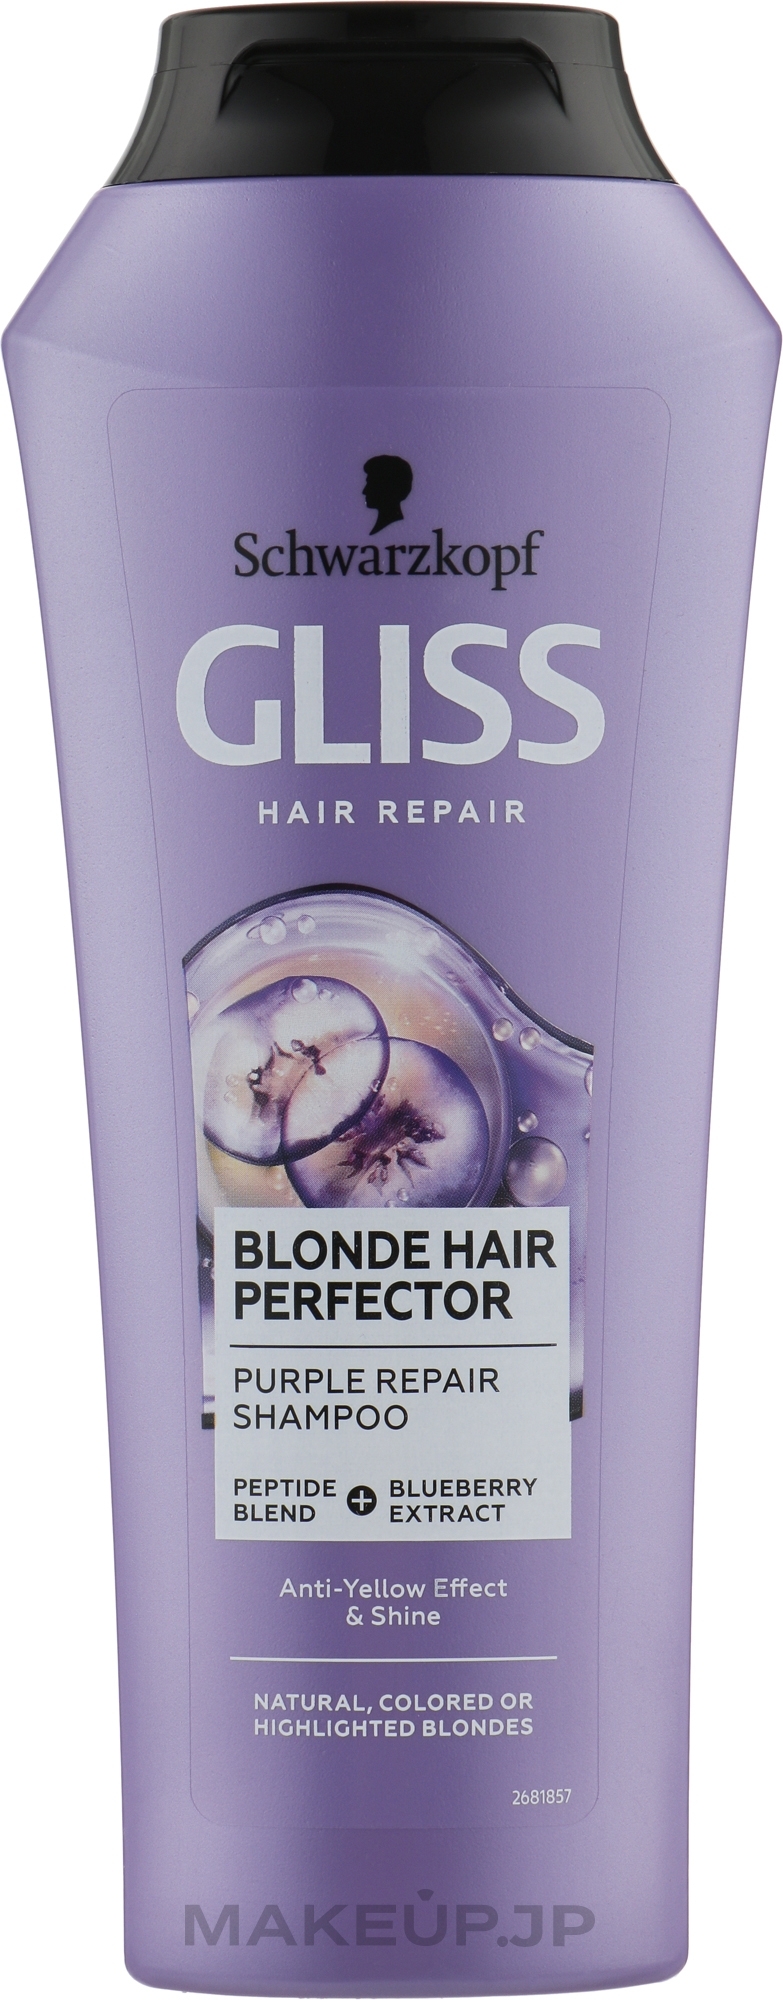 Repair Shampoo for Blonde Hair - Gliss Kur Blonde Hair Perfector Purple Repair Shampoo — photo 250 ml